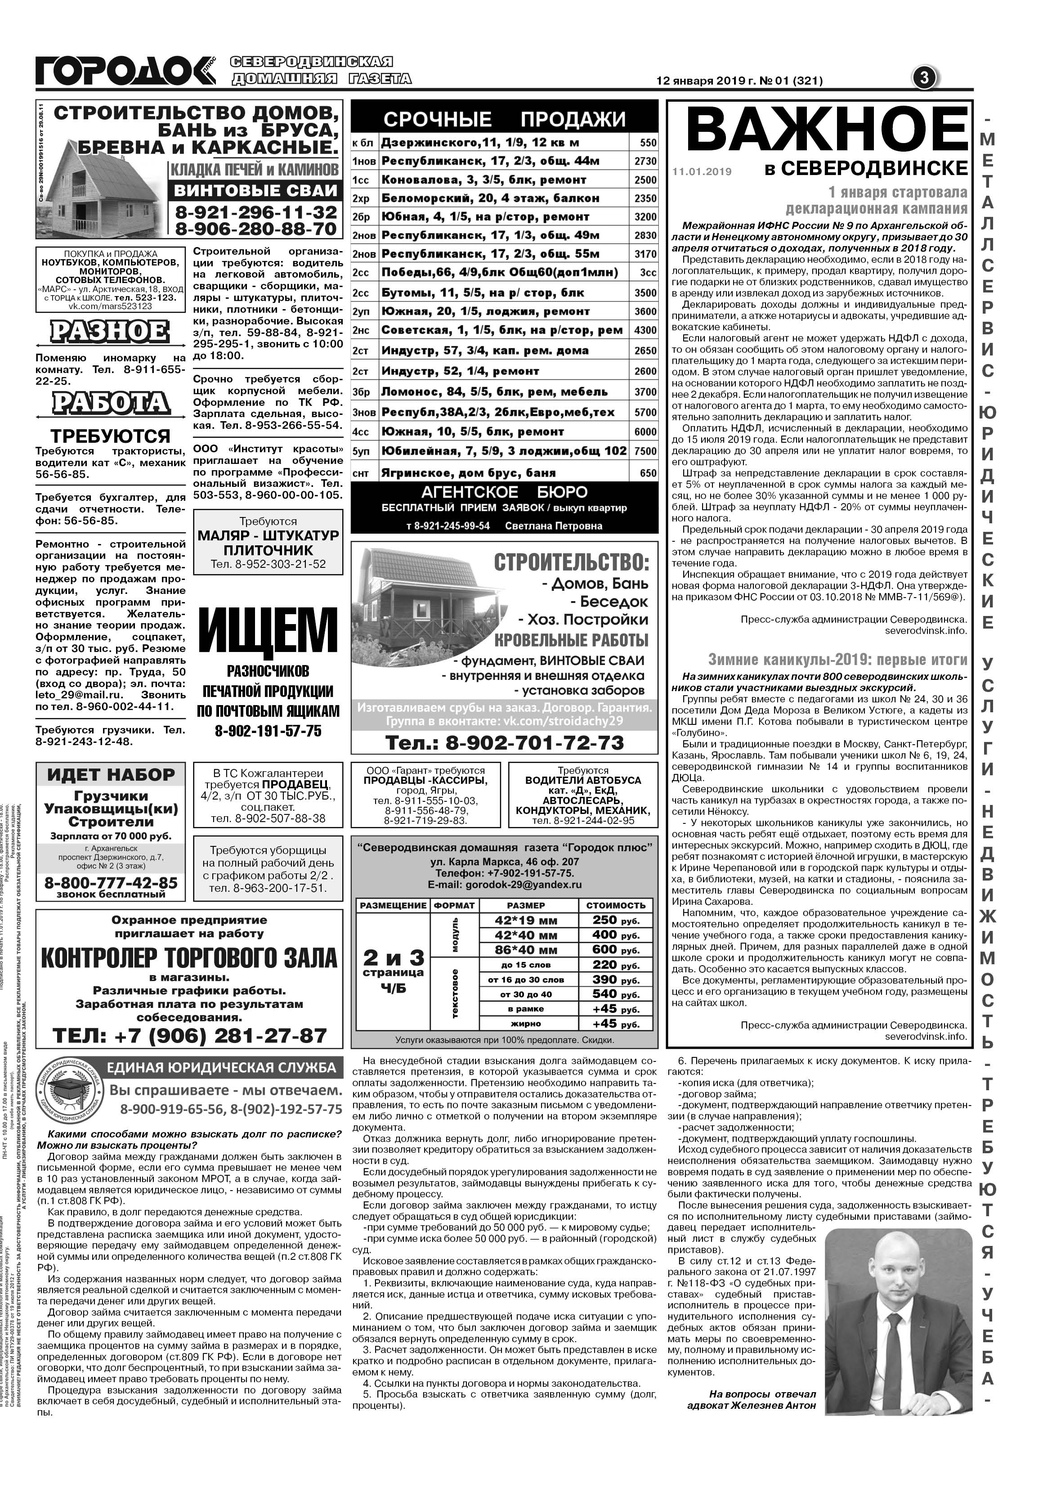 Городок плюс, выпуск номер 1 от 13 января 2019 года, страница 3.